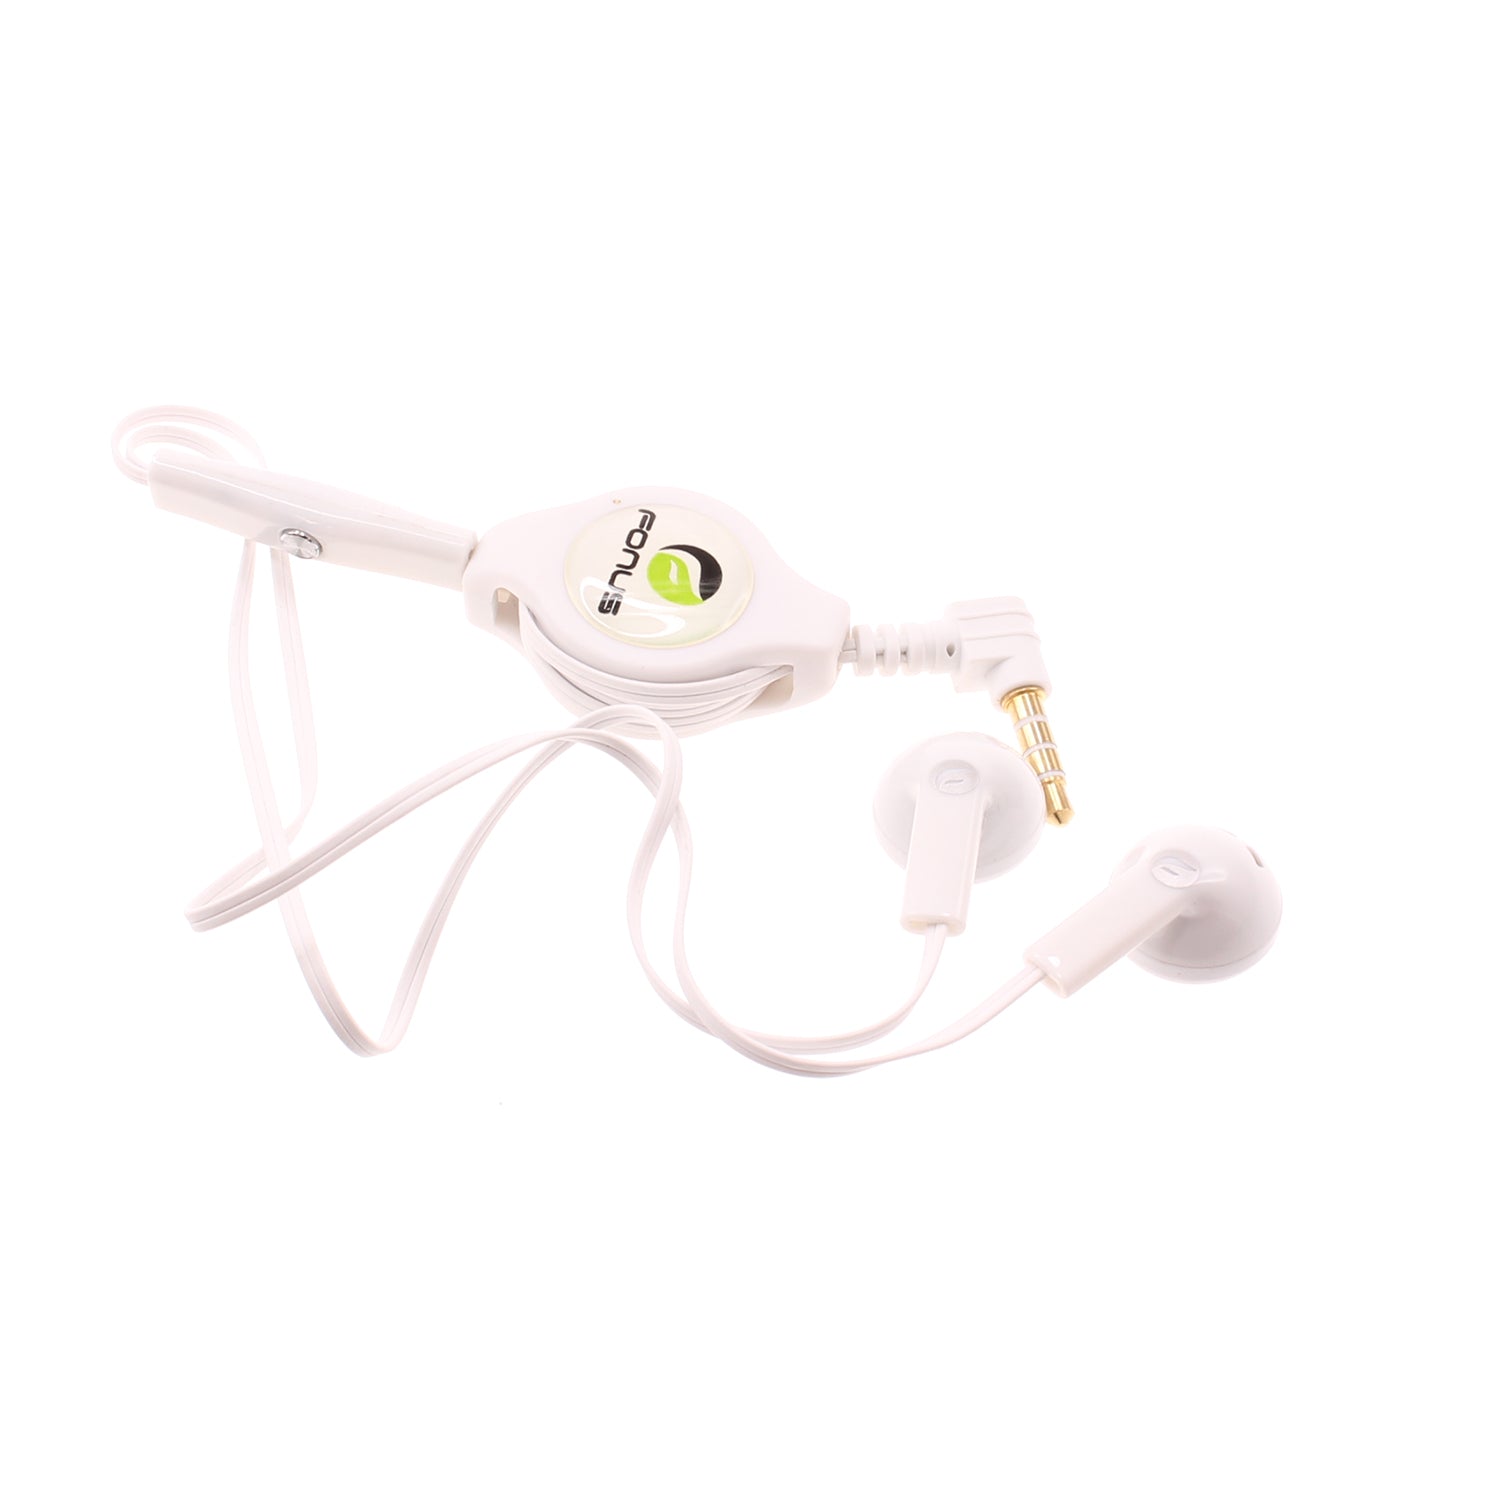 Retractable Earphones, Earbuds Handsfree Headset Hands-free Headphones - NWB56